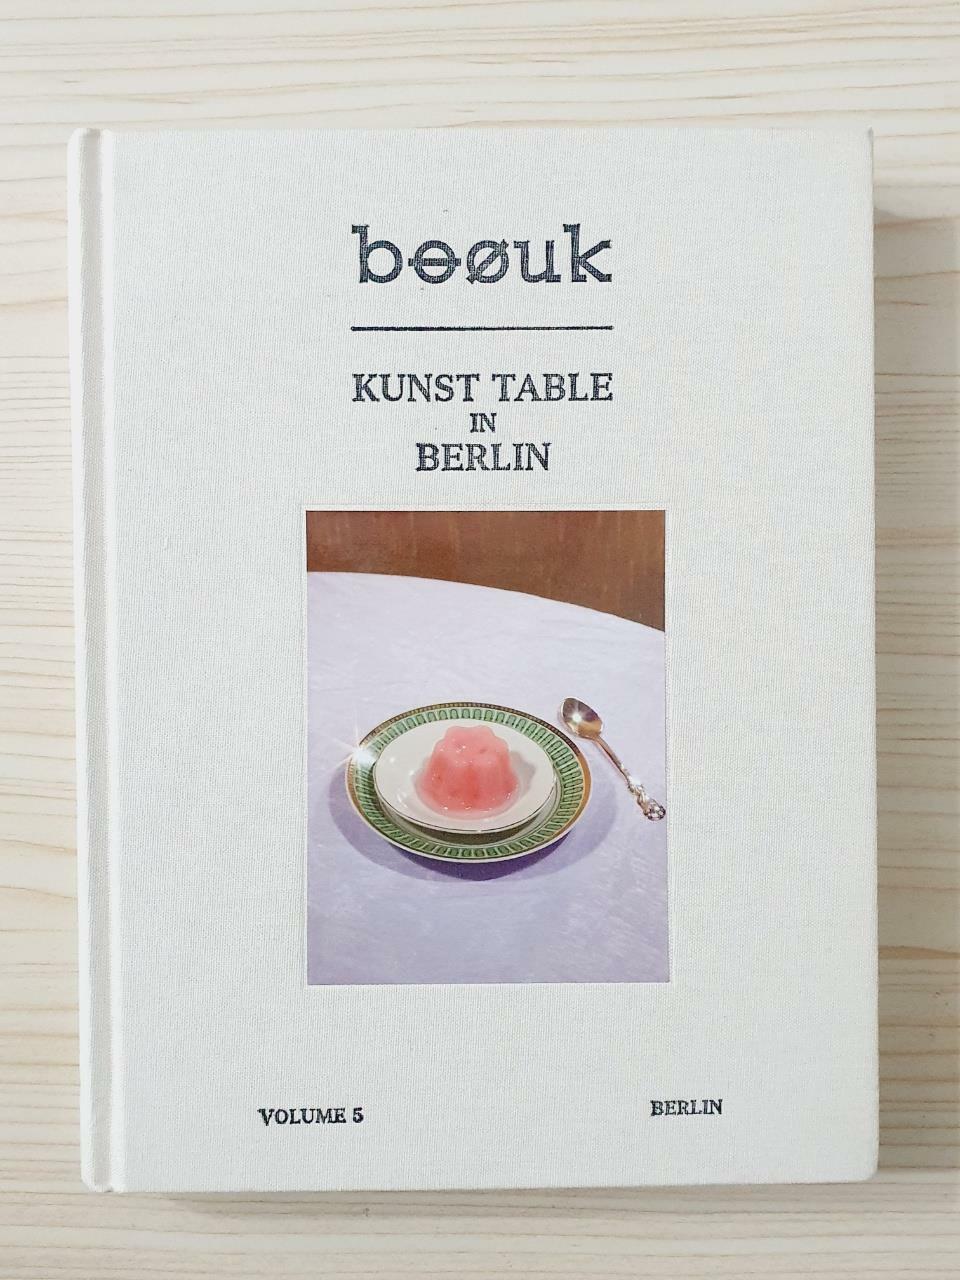 [중고] 부엌 boouk Vol.5 베를린 : Kunst Table in Berlin